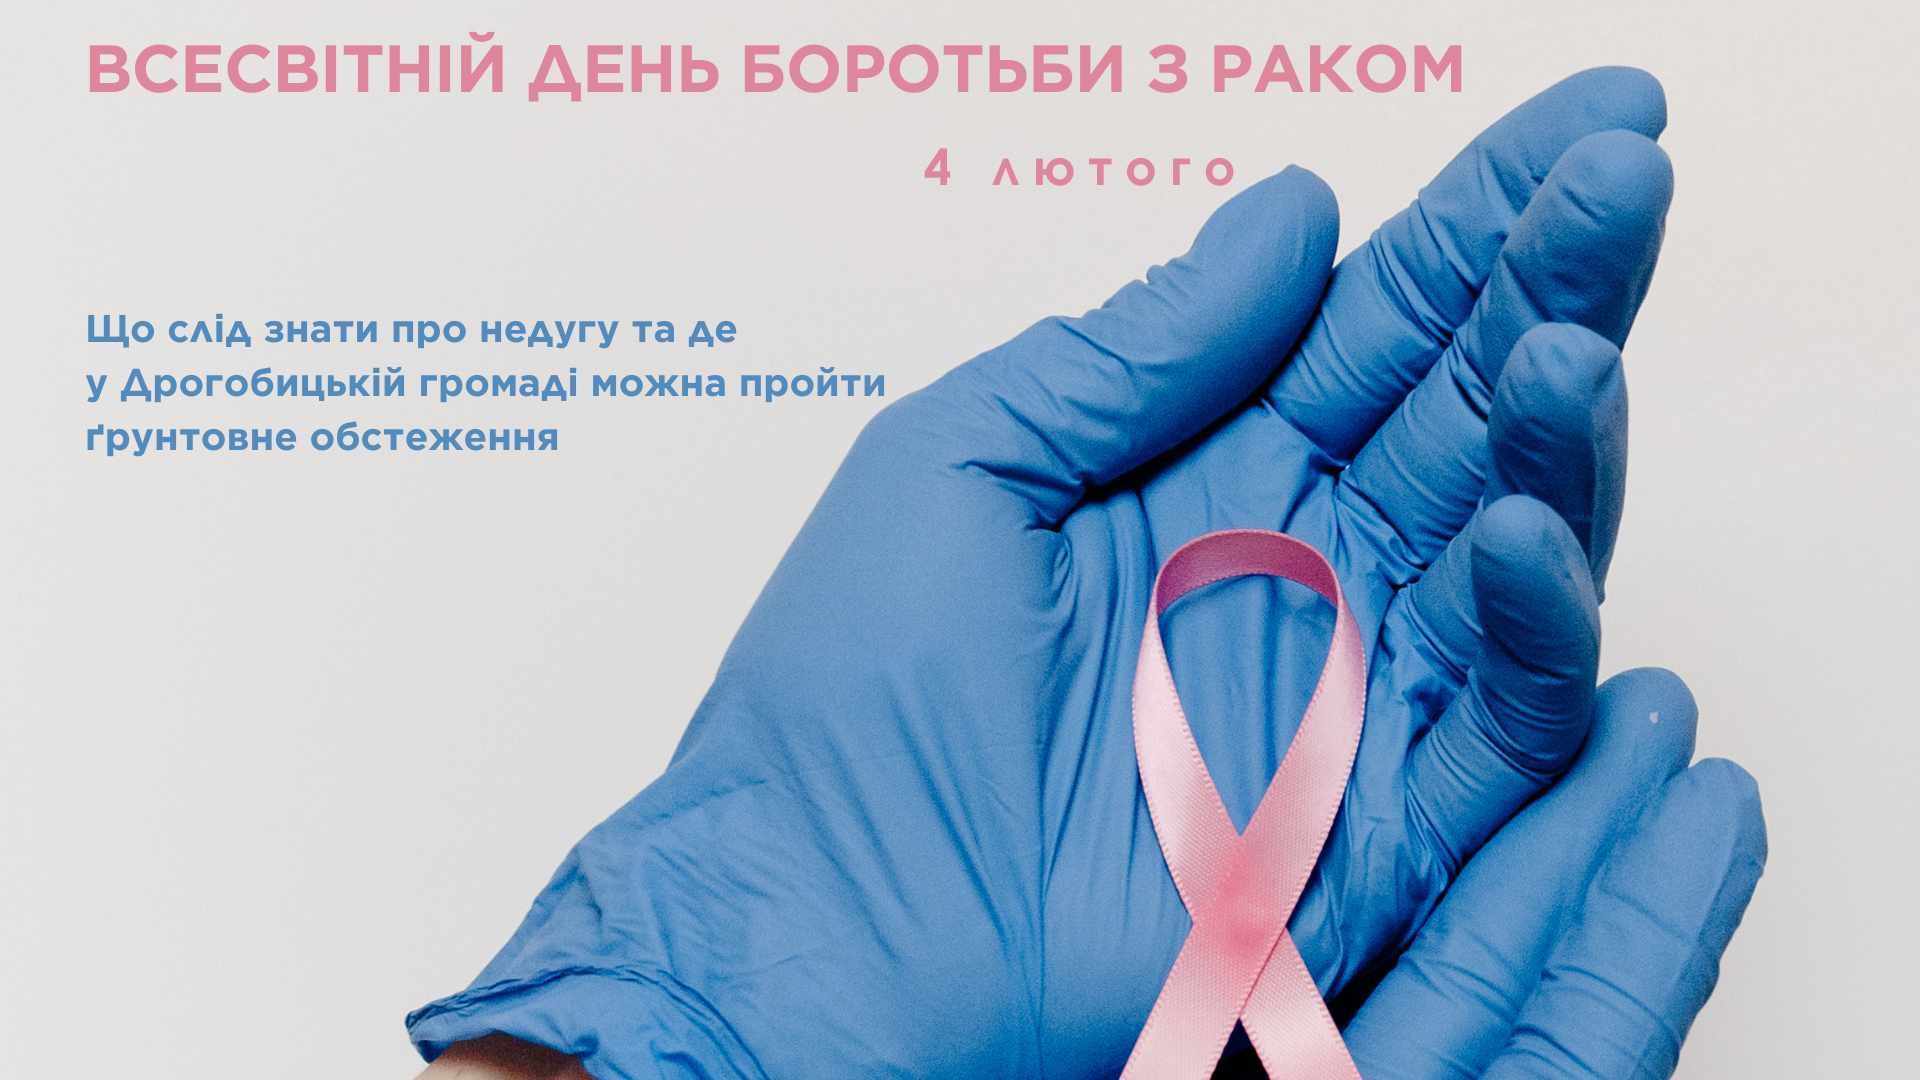 4 лютого – Всесвітній День боротьби проти раку! Що слід знати про недугу та де у Дрогобицькій громаді можна пройти ґрунтовне обстеження